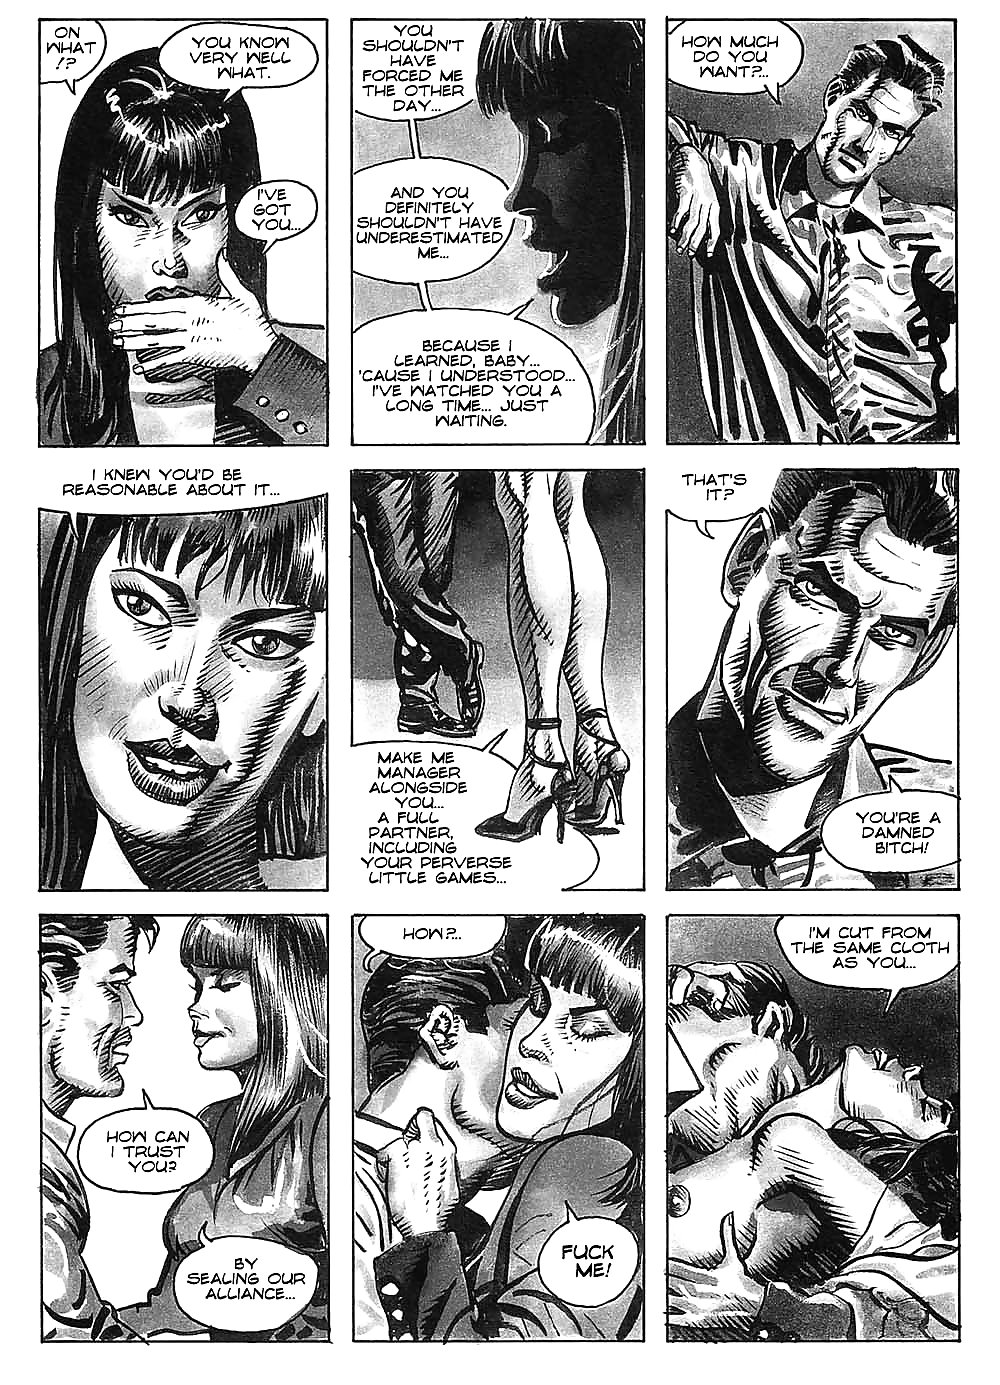 Hot comics 52 #19539841